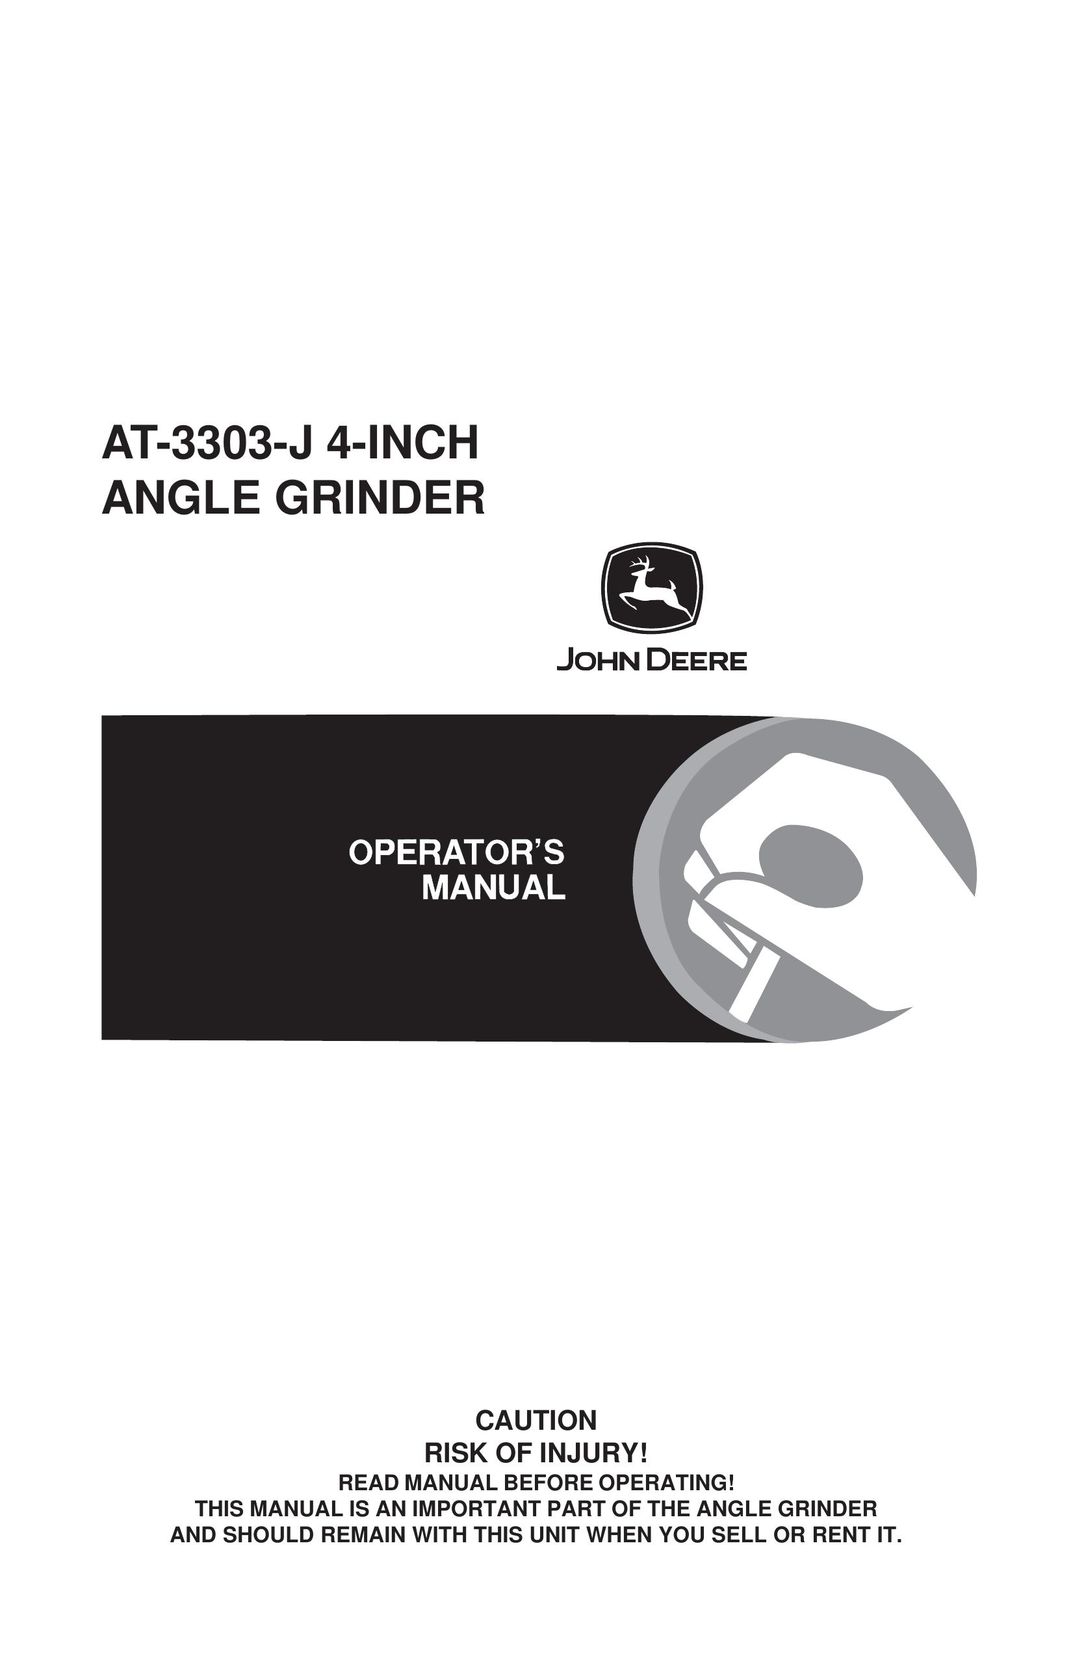 John Deere AT-3303-J Grinder User Manual